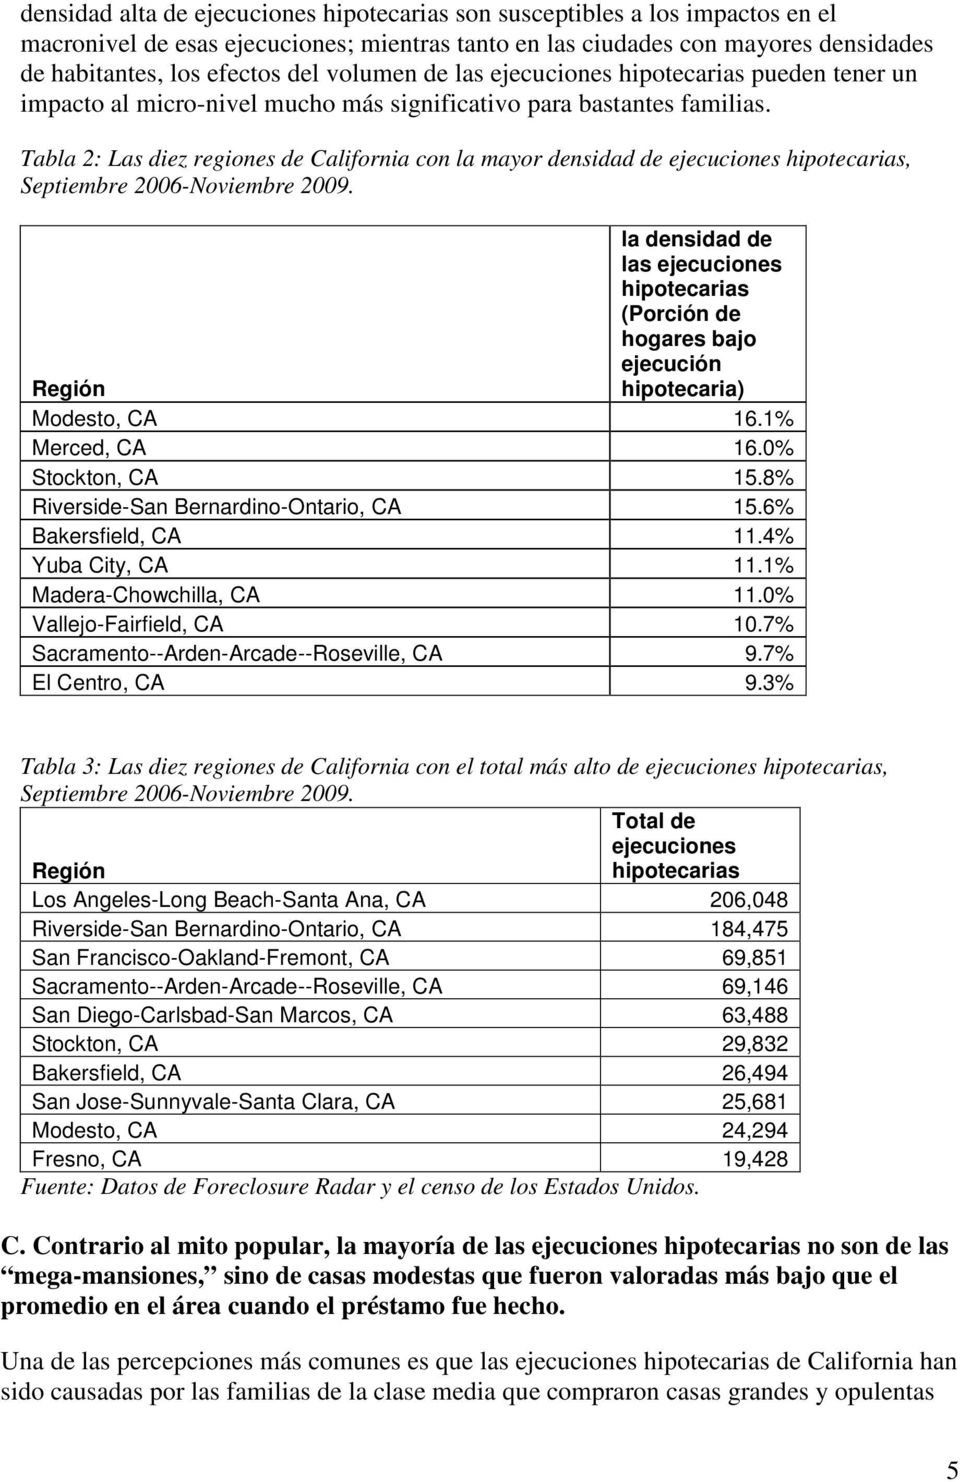 Tabla 2: Las diez regiones de California con la mayor densidad de ejecuciones hipotecarias, Septiembre 2006-Noviembre 2009.